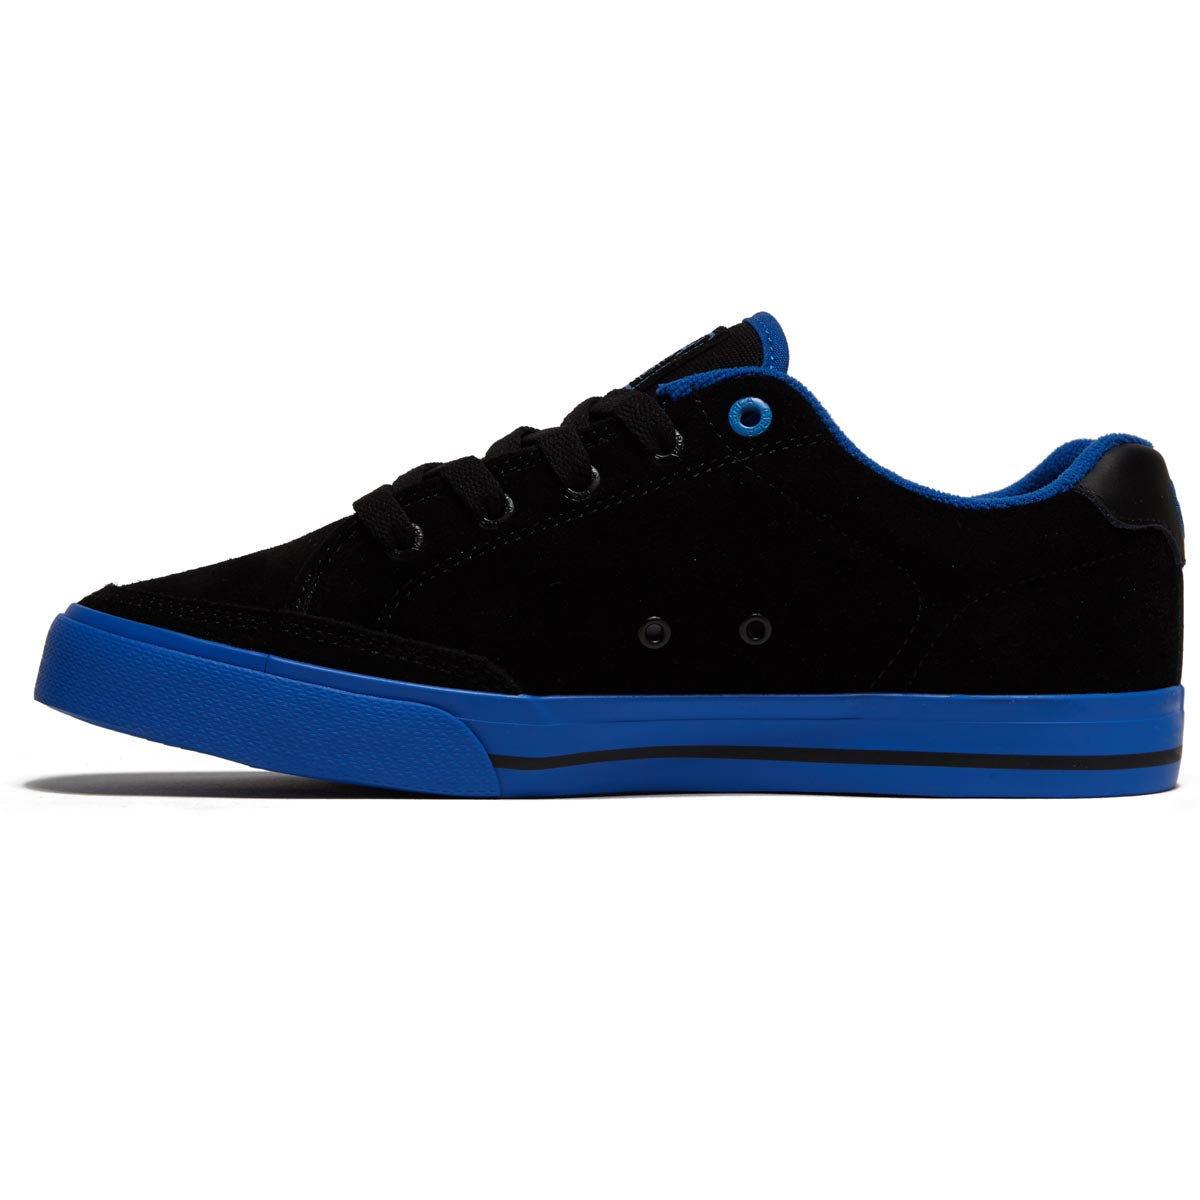 C1rca Al 50 Slim Shoes - Black/Strong Blue image 2